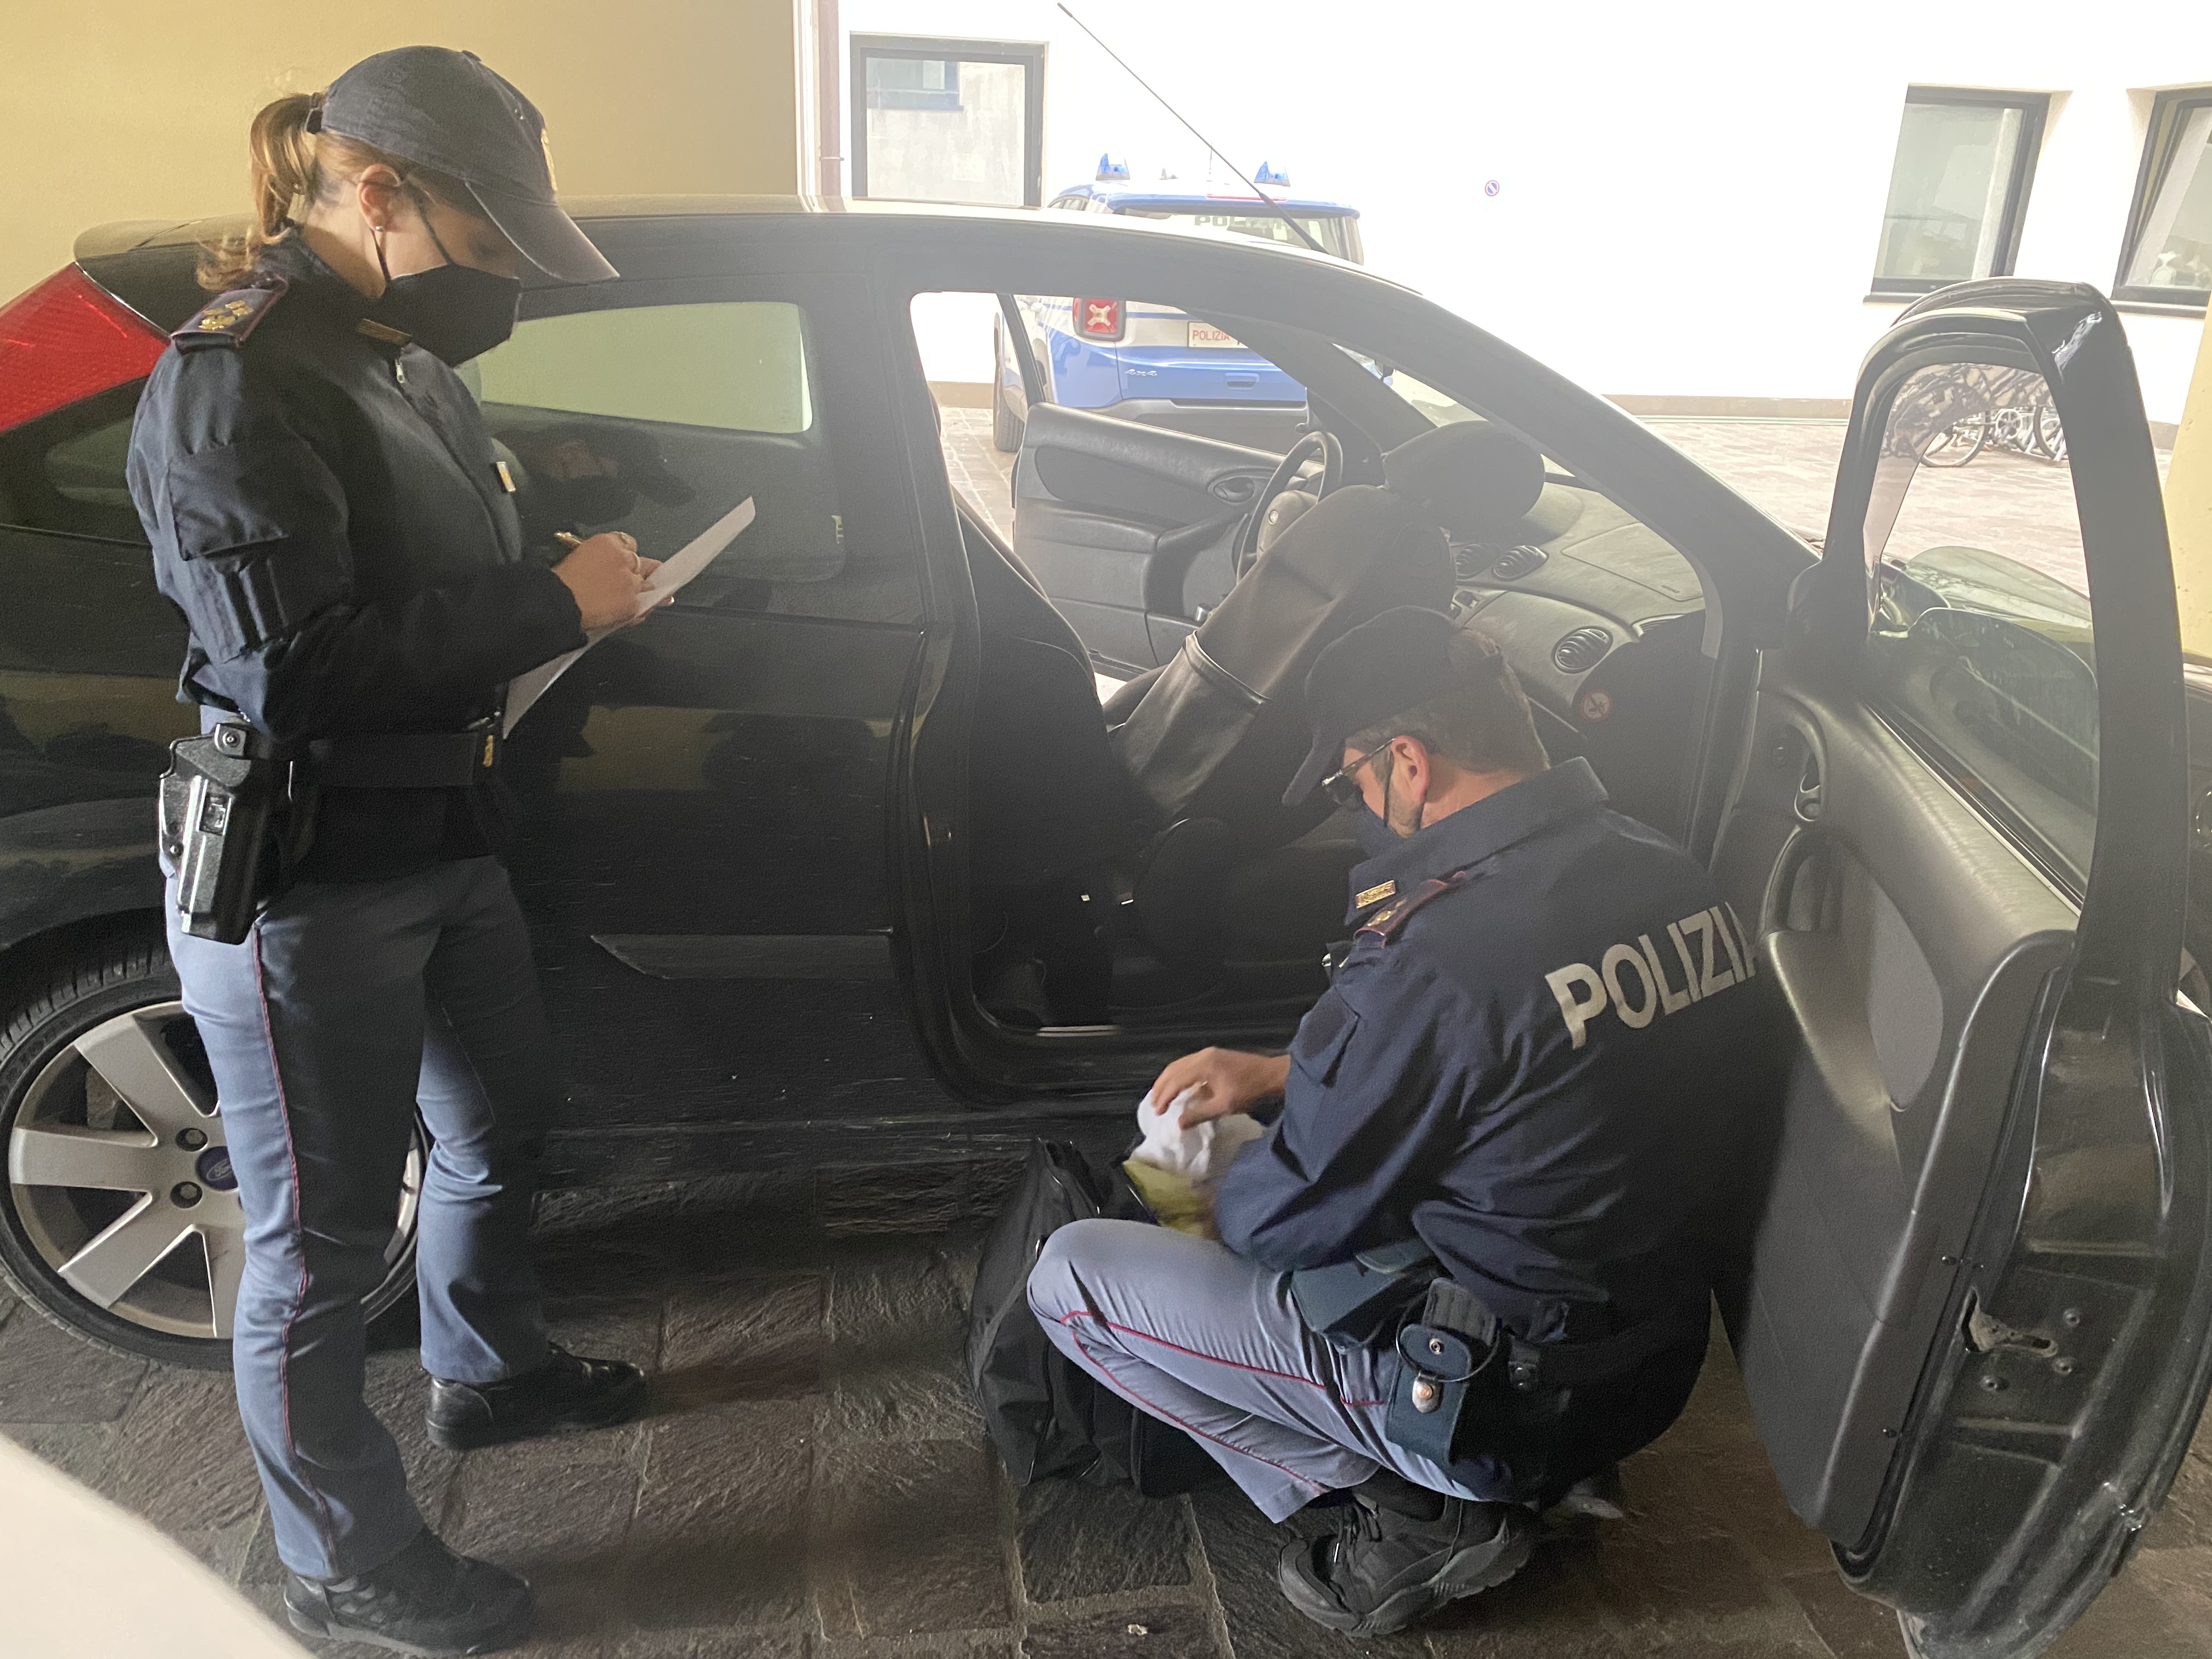 Violano il coprifuoco con la cocaina nascosta nell’auto: bloccati nella notte dalla Polizia di Stato due pregiudicati